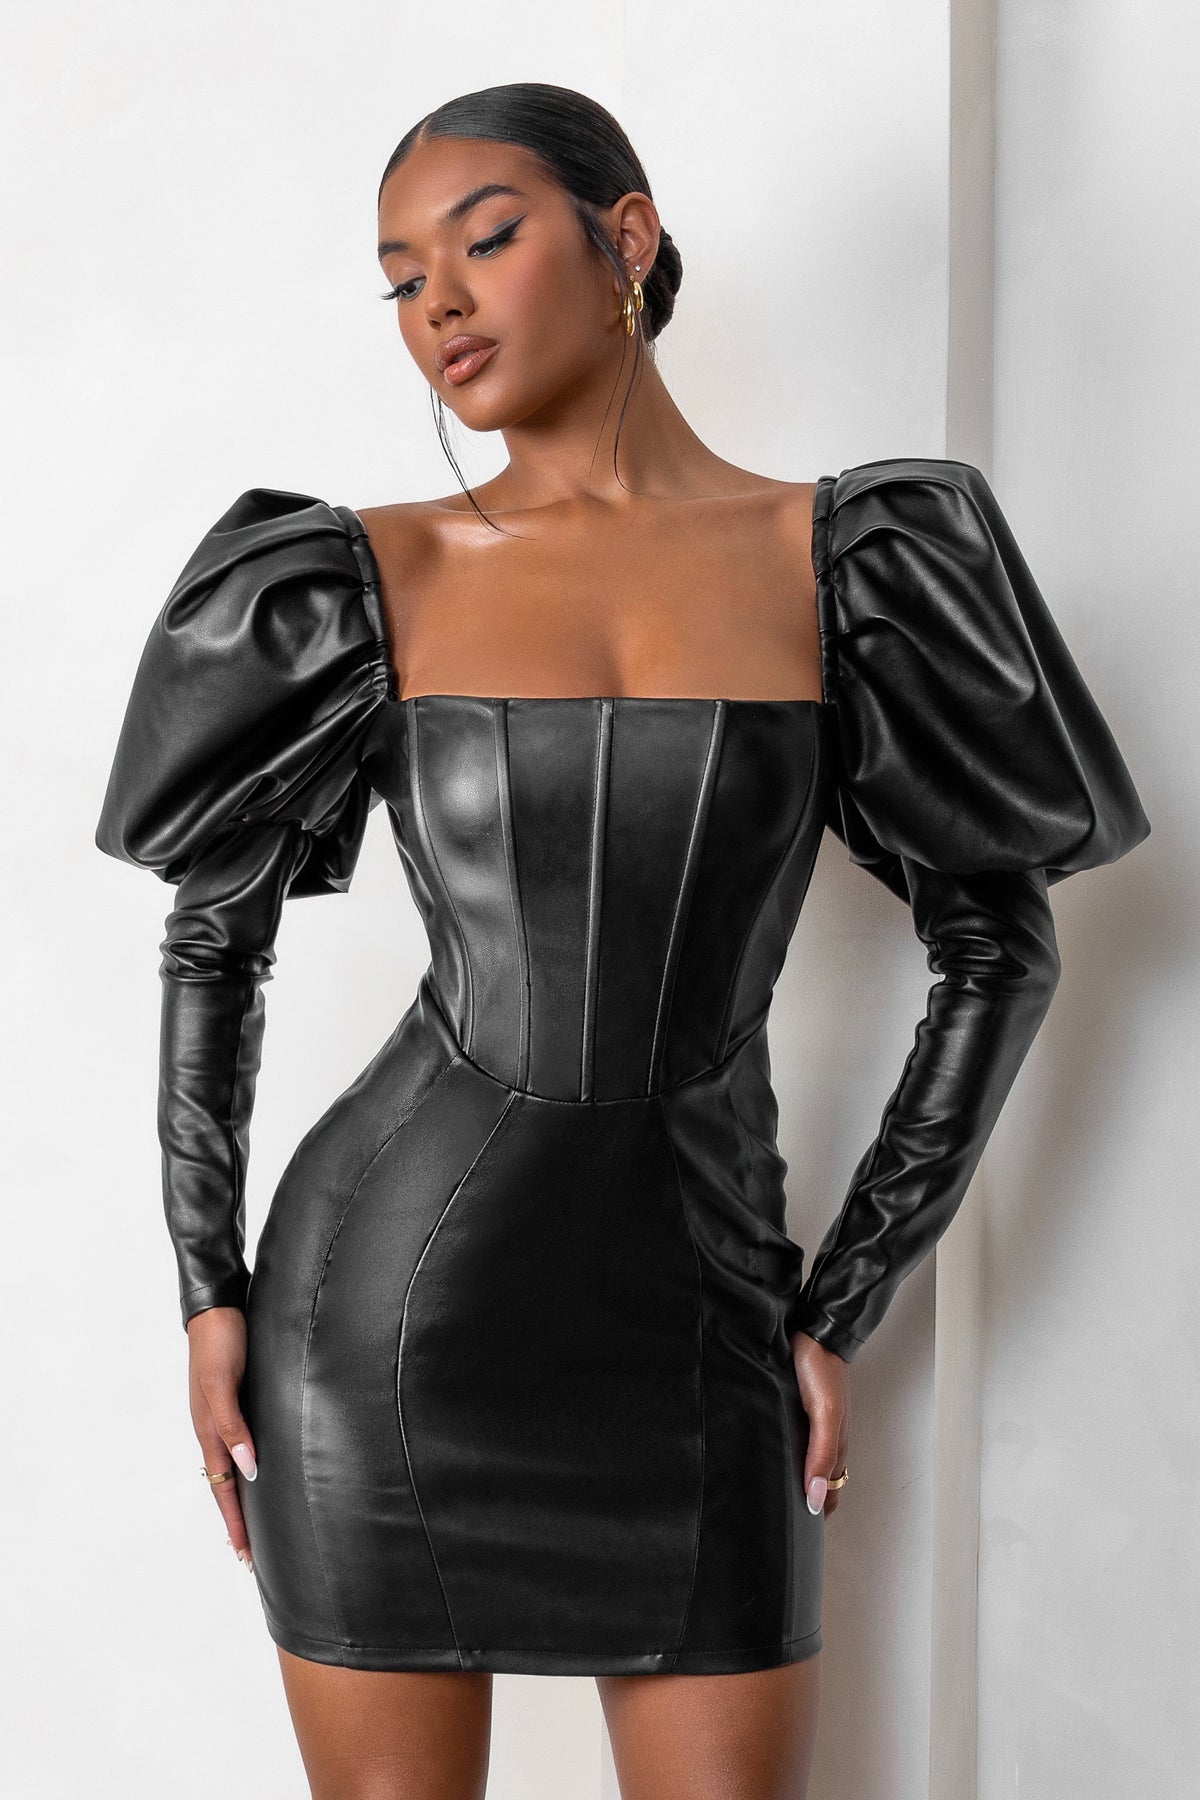 Black Leather Dresses, Black Leather Mini Dresses